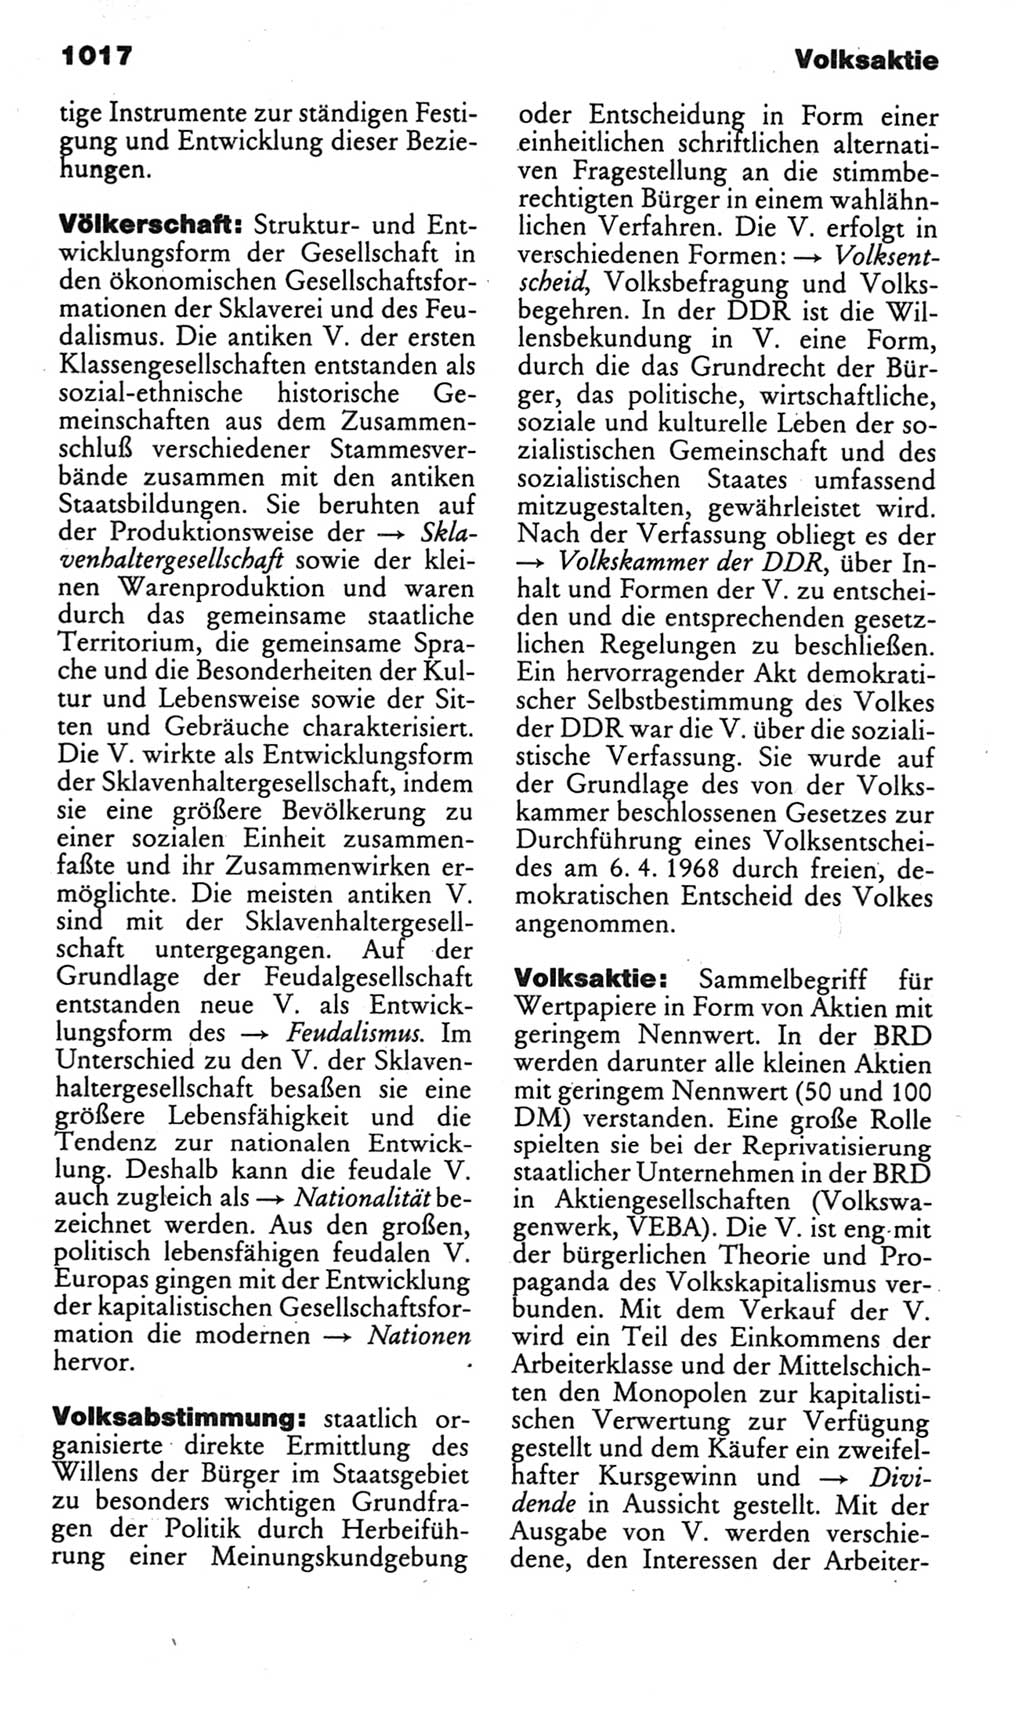 Kleines politisches Wörterbuch [Deutsche Demokratische Republik (DDR)] 1985, Seite 1017 (Kl. pol. Wb. DDR 1985, S. 1017)